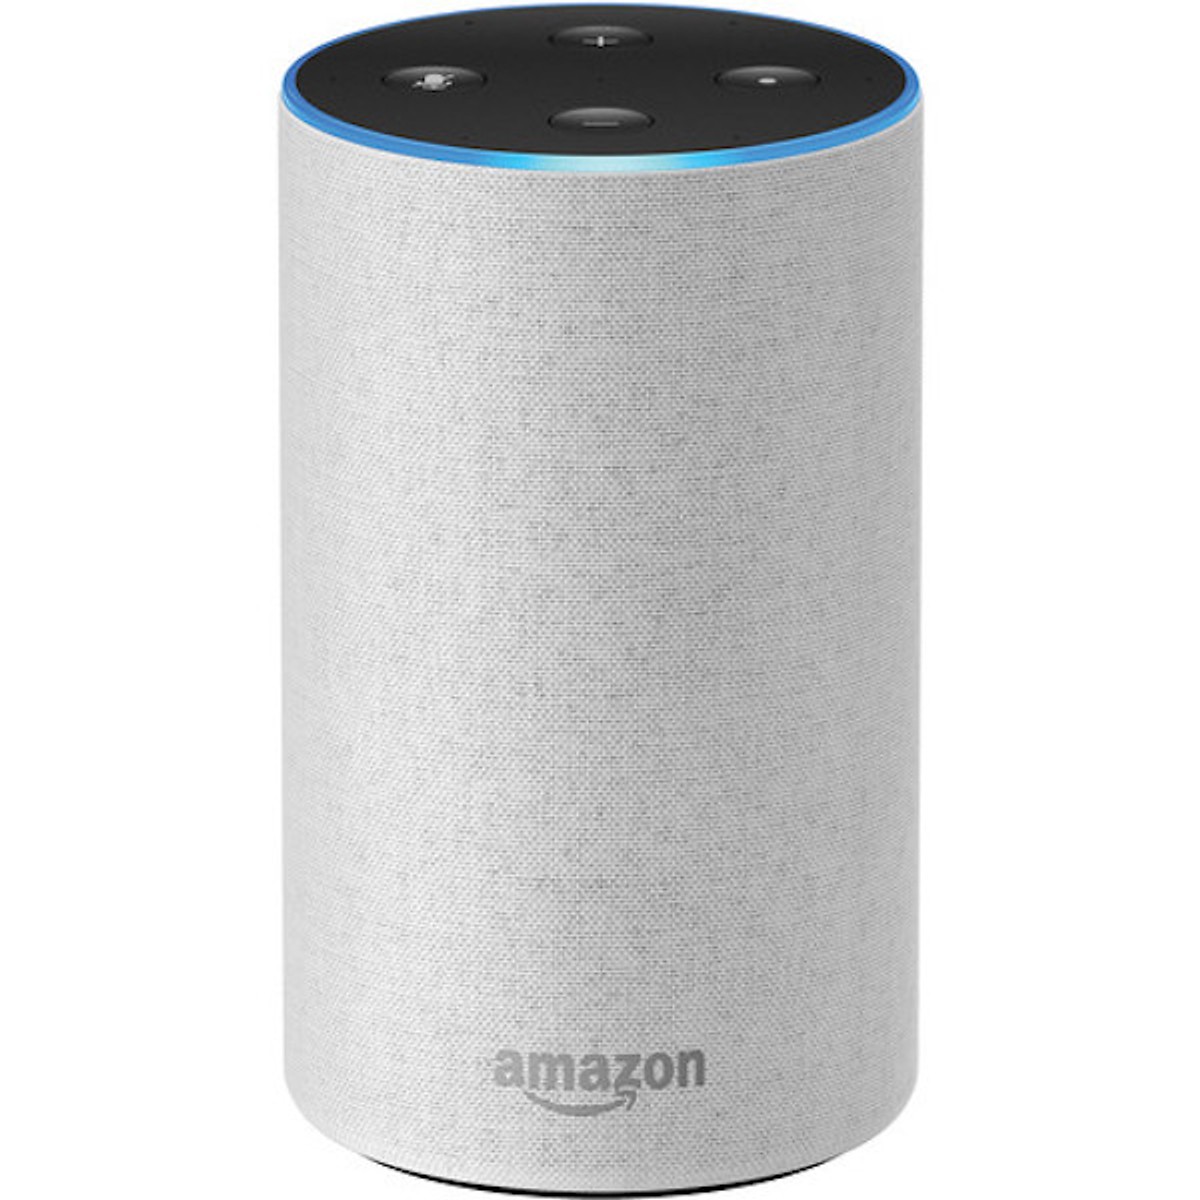 Loa Thông Minh Amazon Echo (2nd Generation) - Hàng Nhập Khẩu